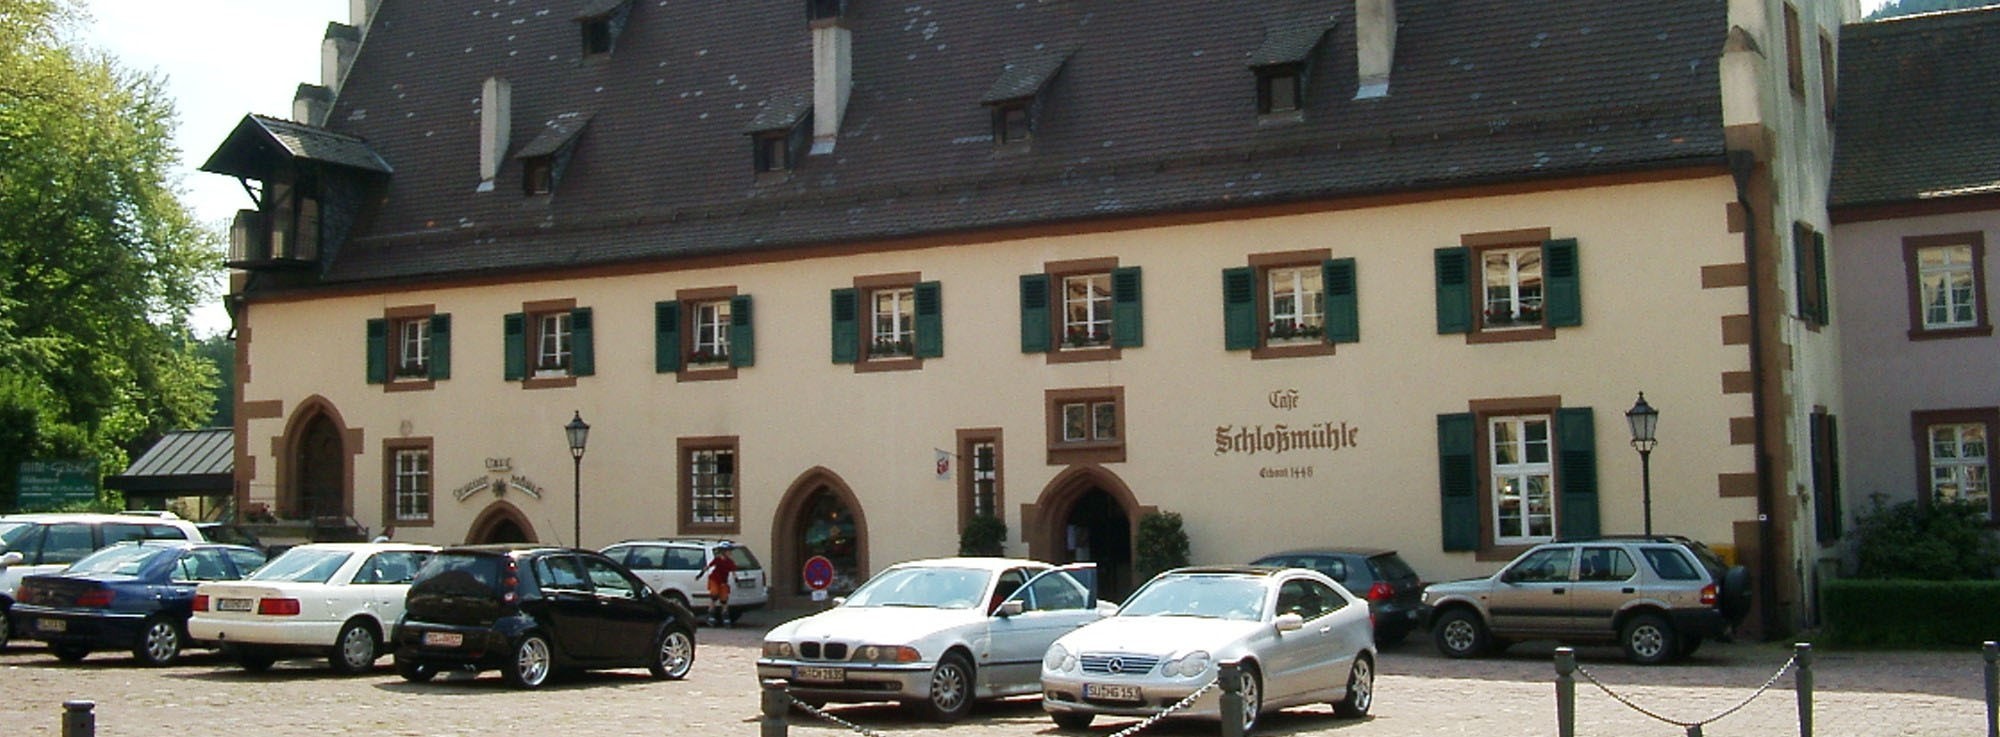 Cafe Schloßmühle in Amorbach im schönen Odenwald